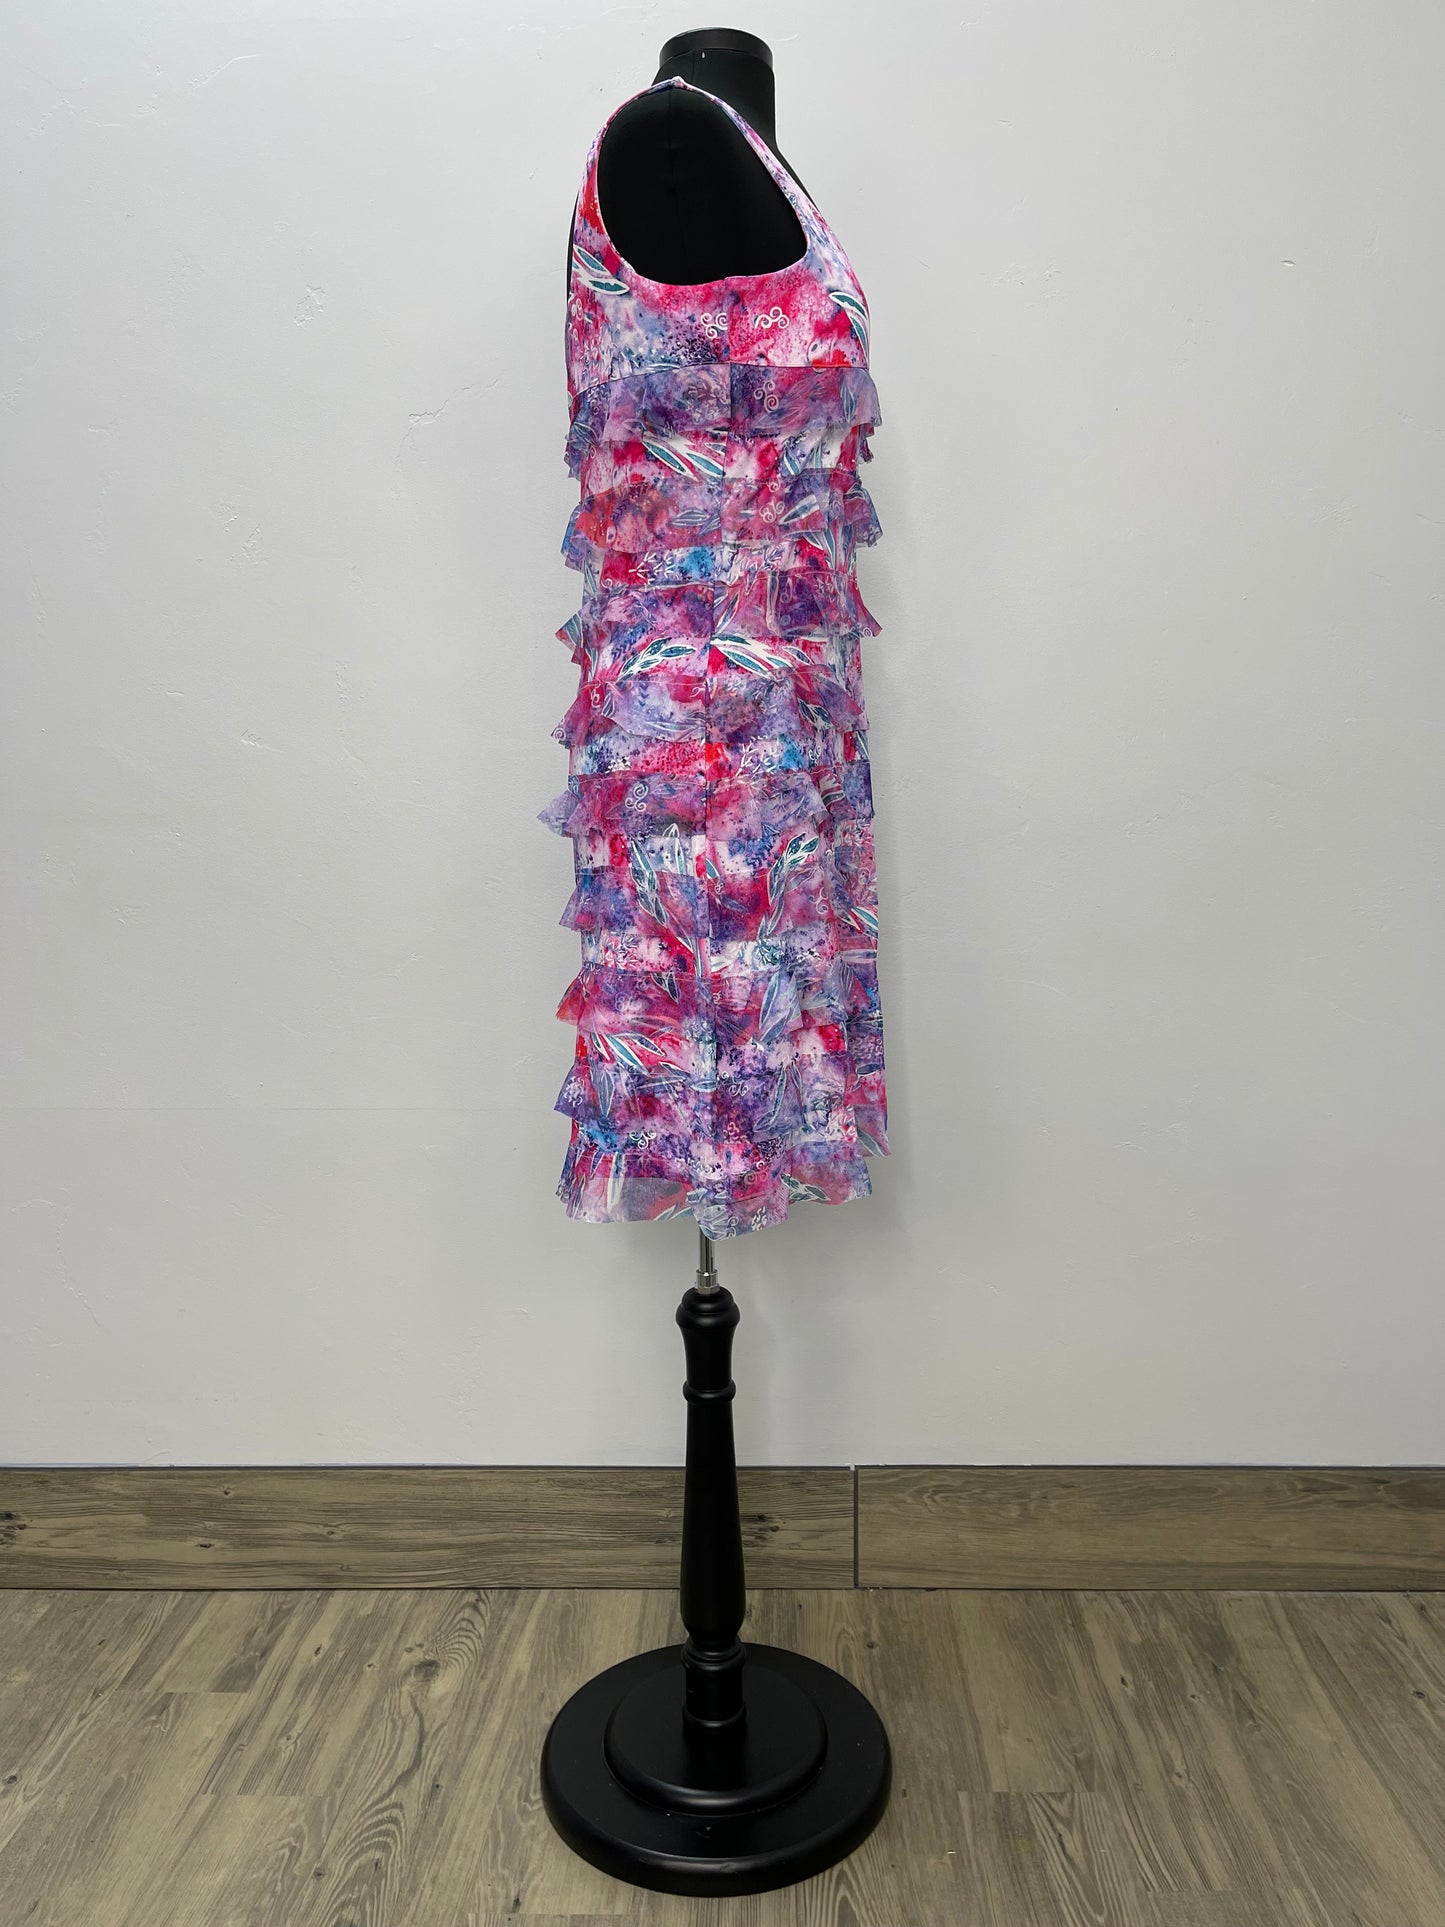 Pink Pattern Sleeveless Mesh Ruffle Dress